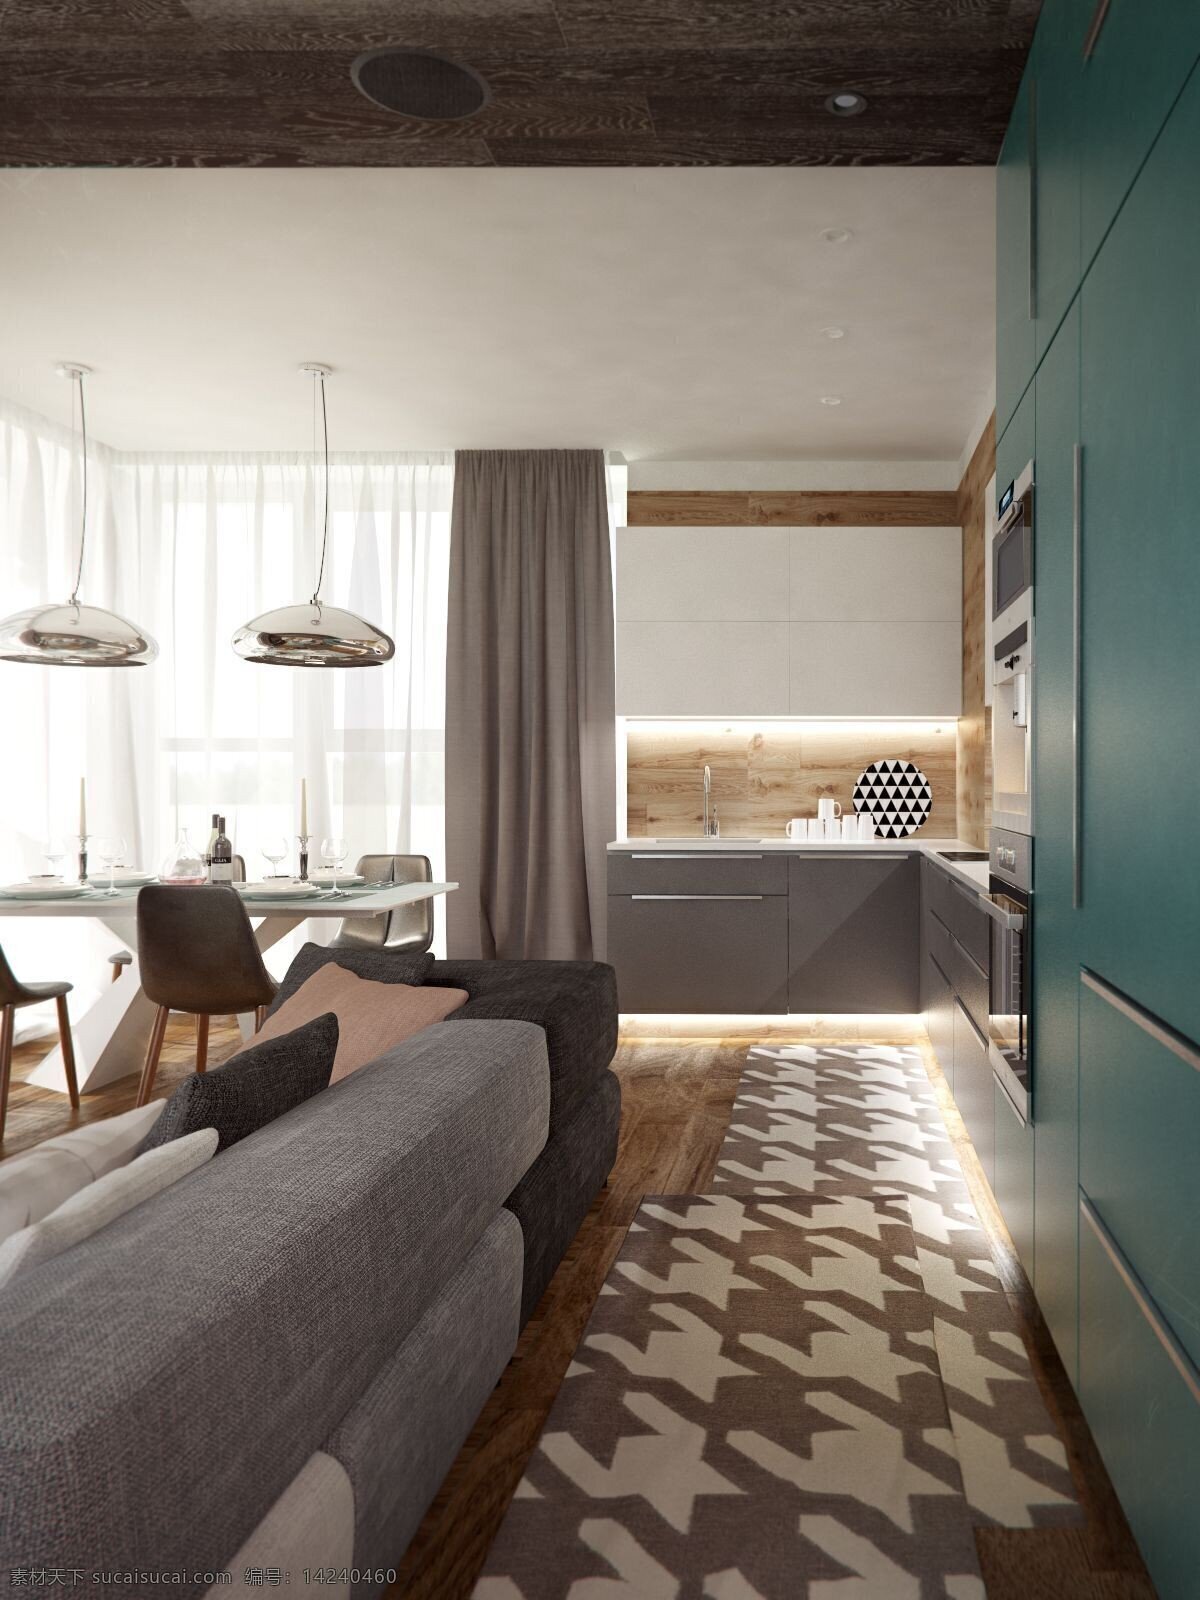 日式 温馨 客厅 褐色 花纹 地板 室内装修 效果图 灰色沙发 客厅装修 蓝绿色背景墙